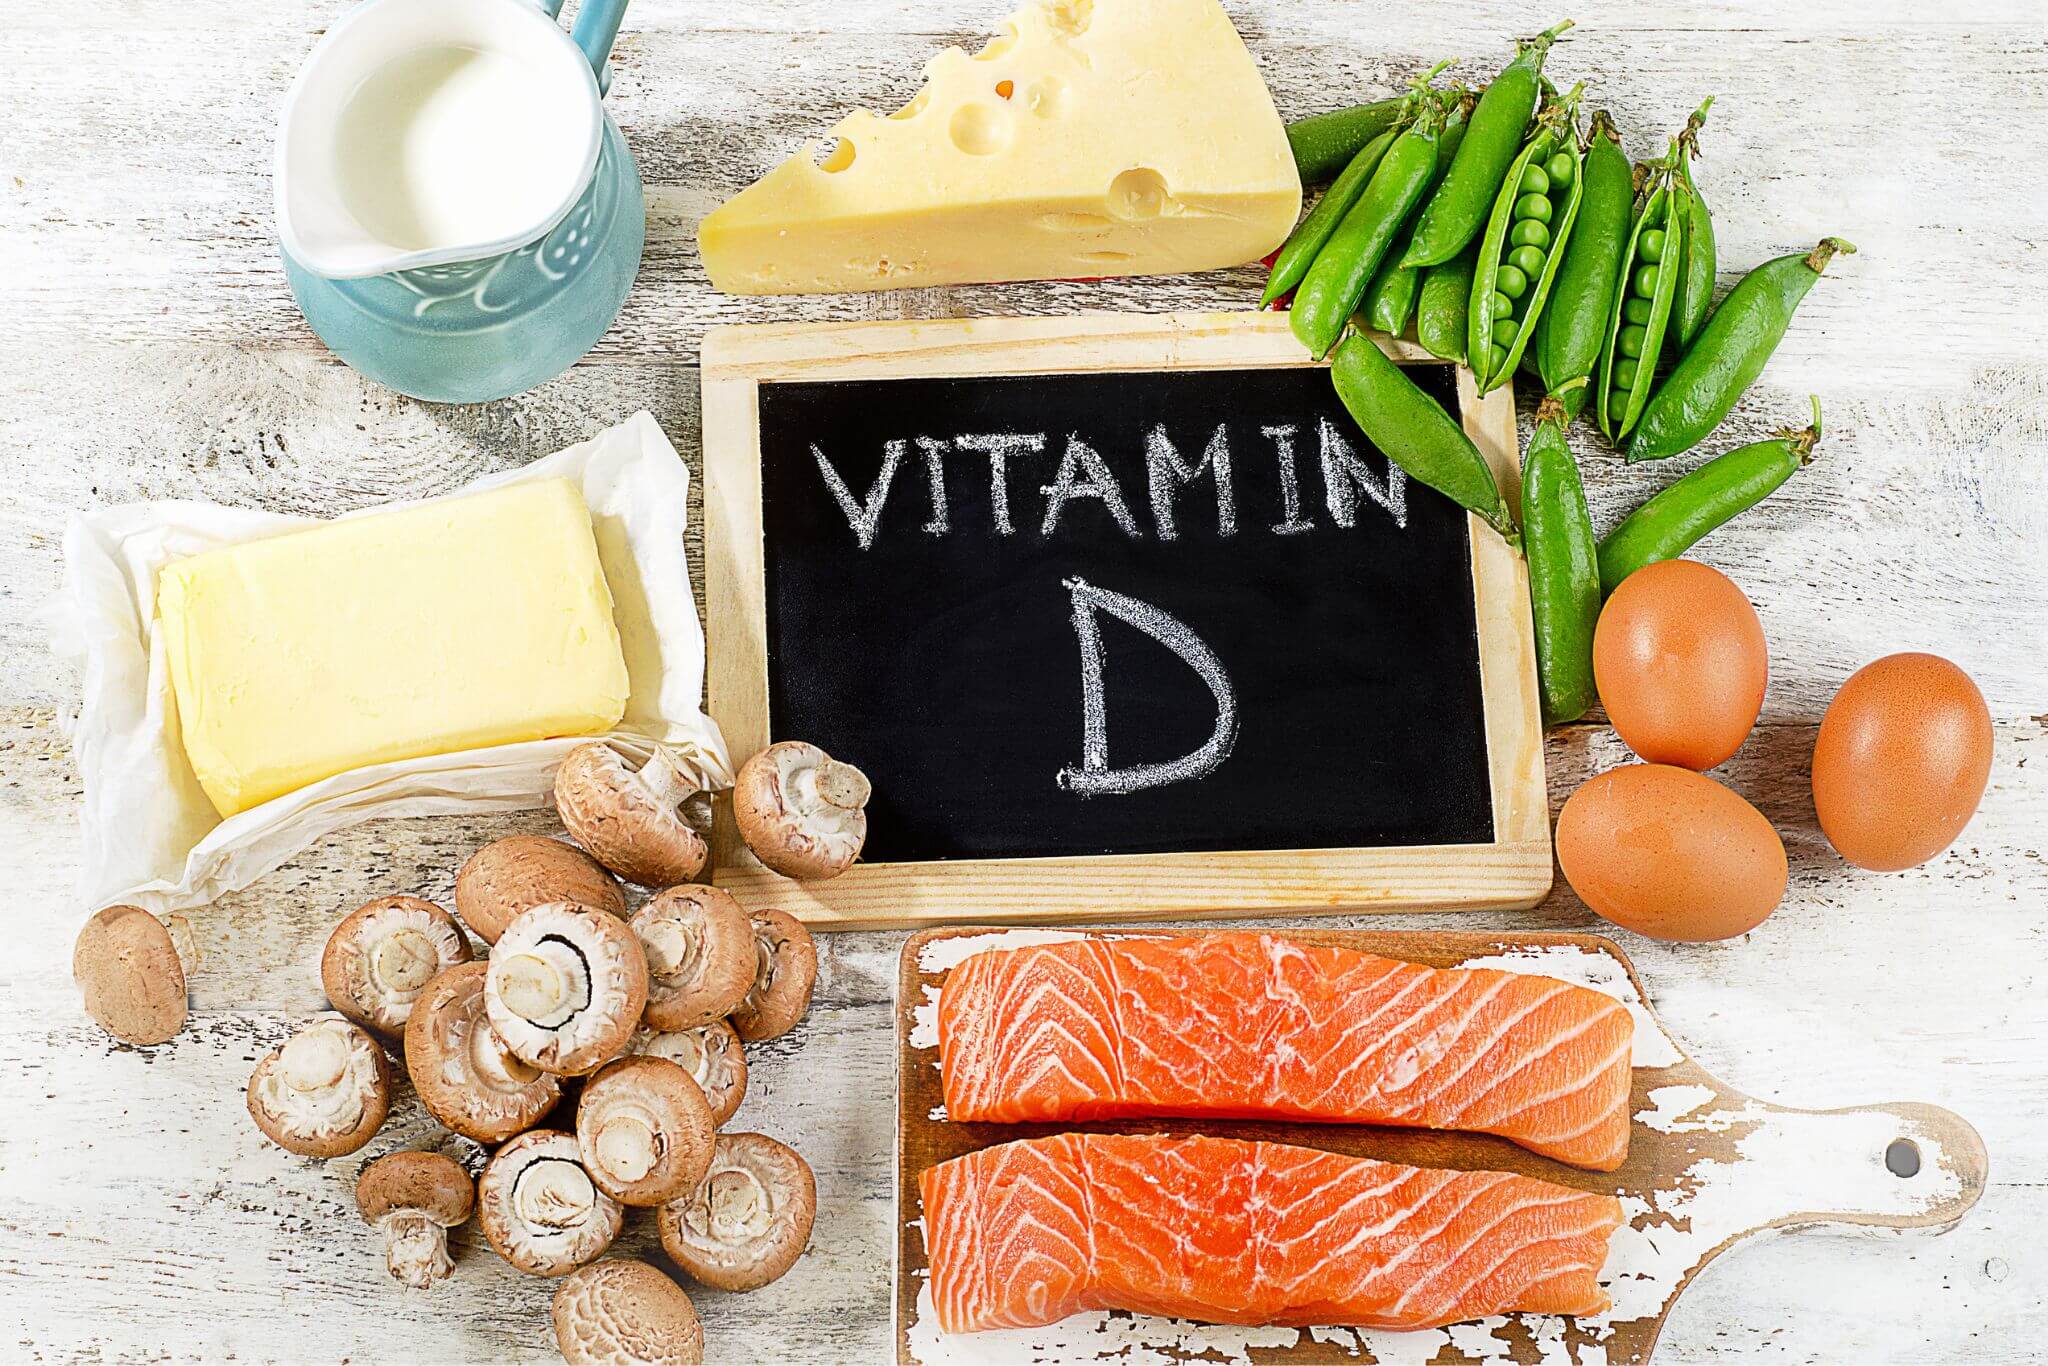 In welchen Lebensmitteln steckt Vitamin D?